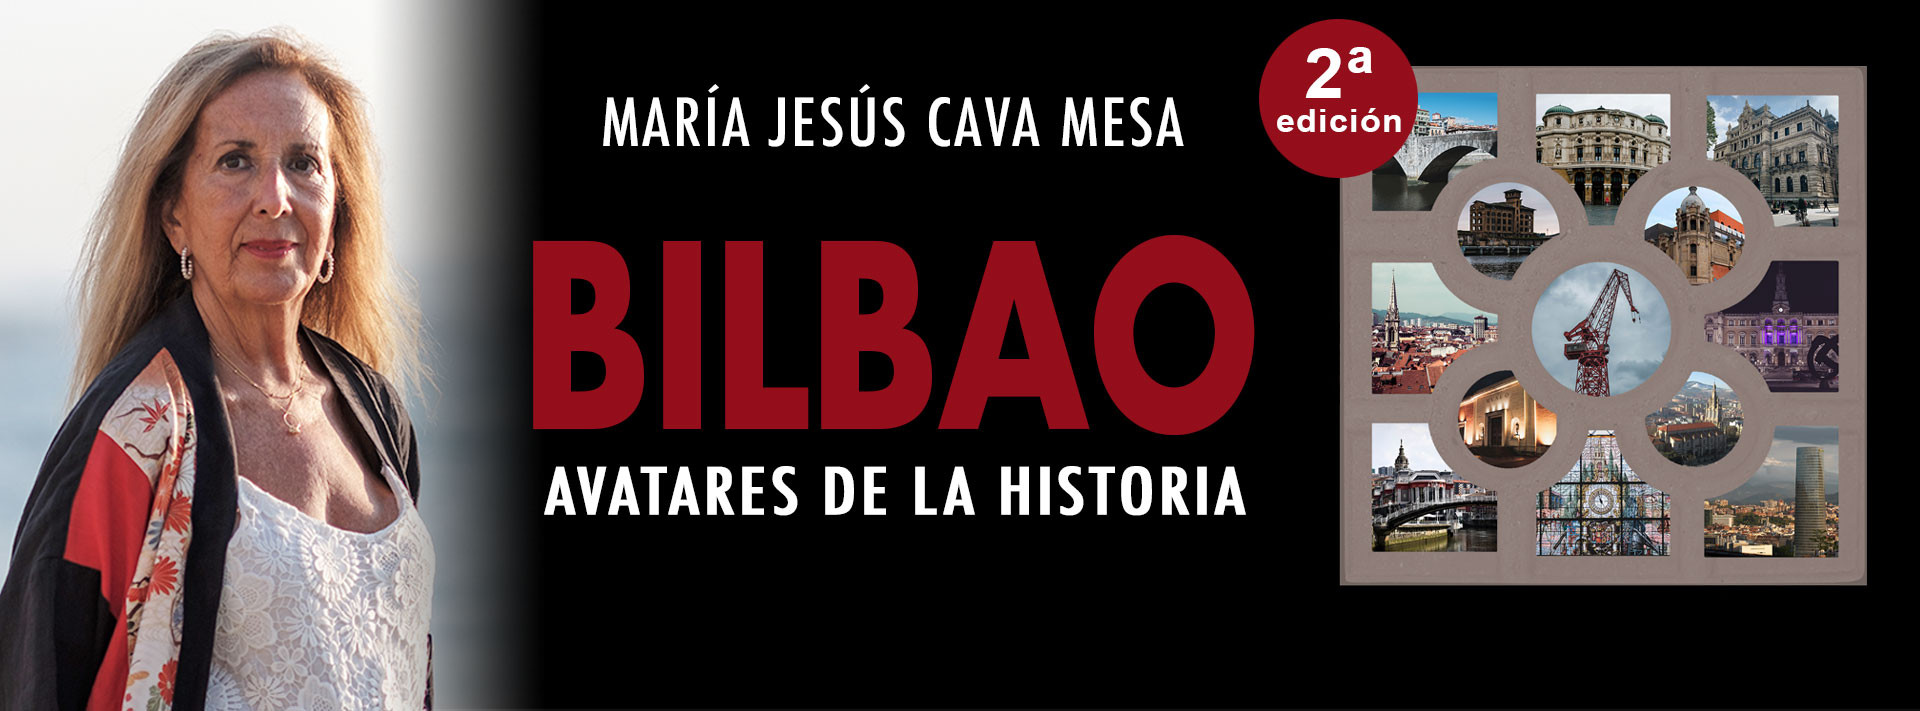 Bilbao Avatares de la Historia de María Jesús Cava Mesa 2da Edición, tapa rústica